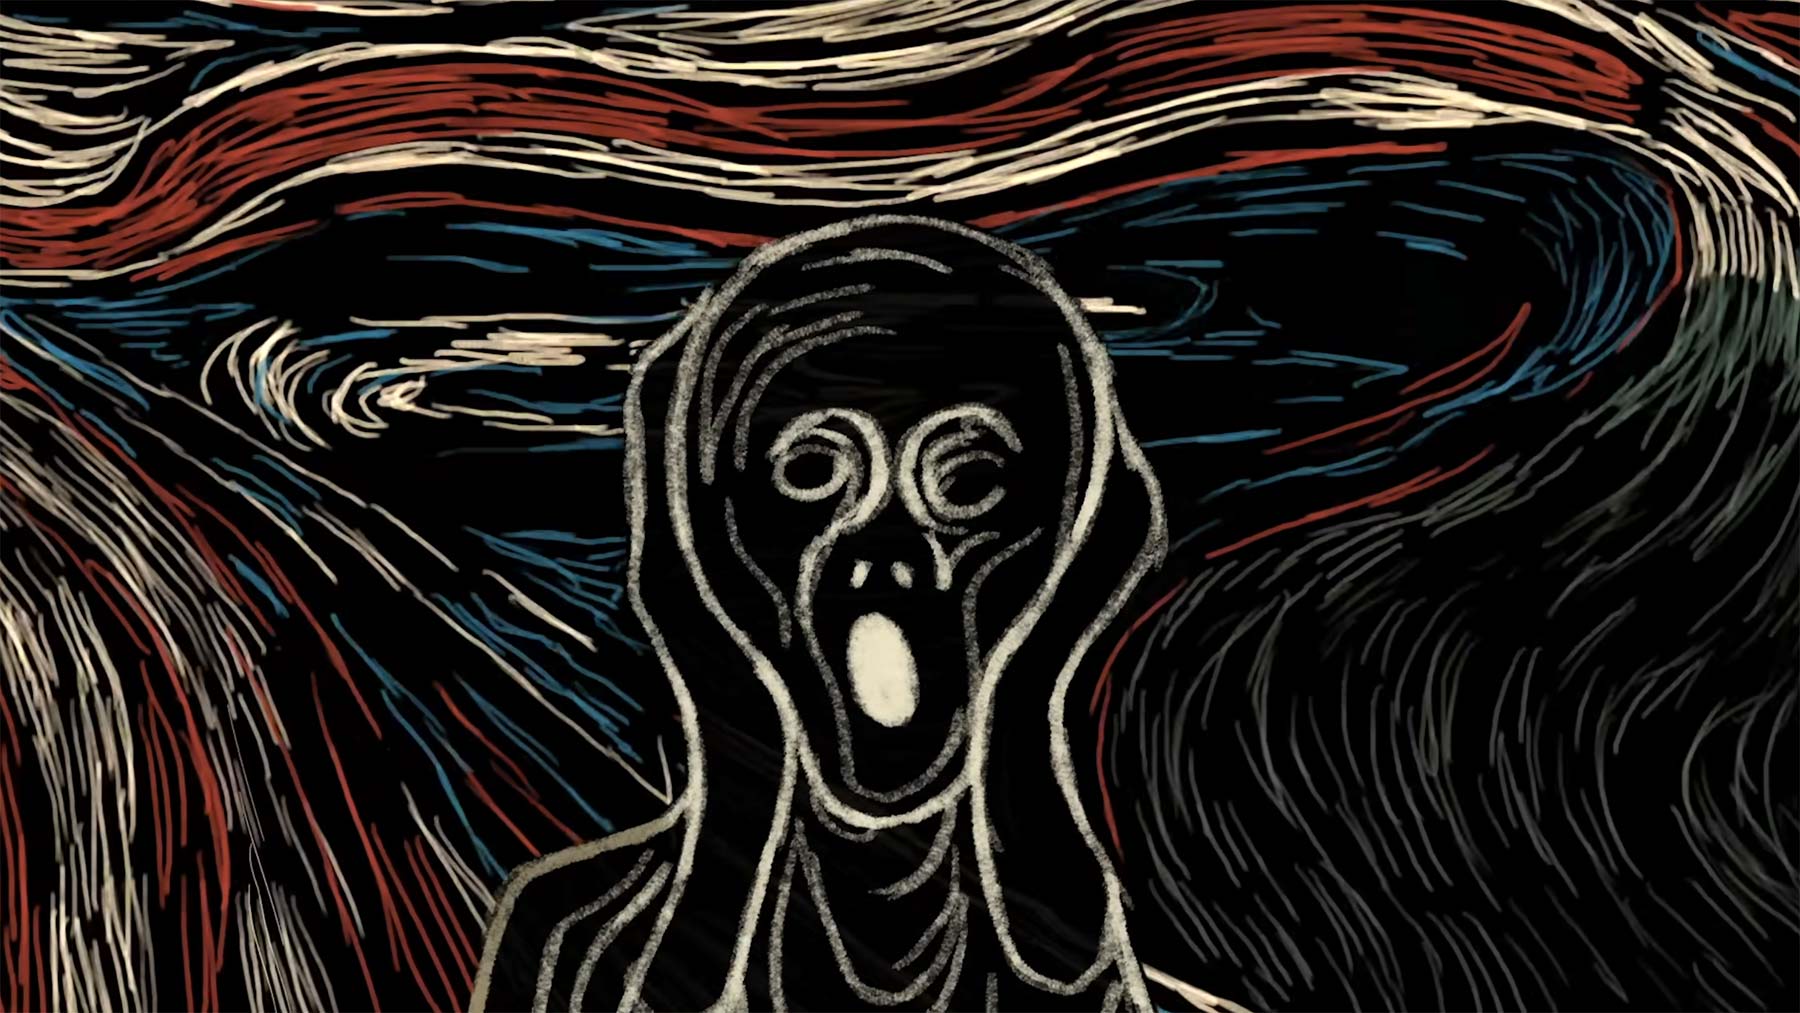 "Der Schrei": Wer ist die Person auf dem Bild von Edvard Munch? edvard-munch-der-schrei-wer-ist-die-person-auf-dem-bild 